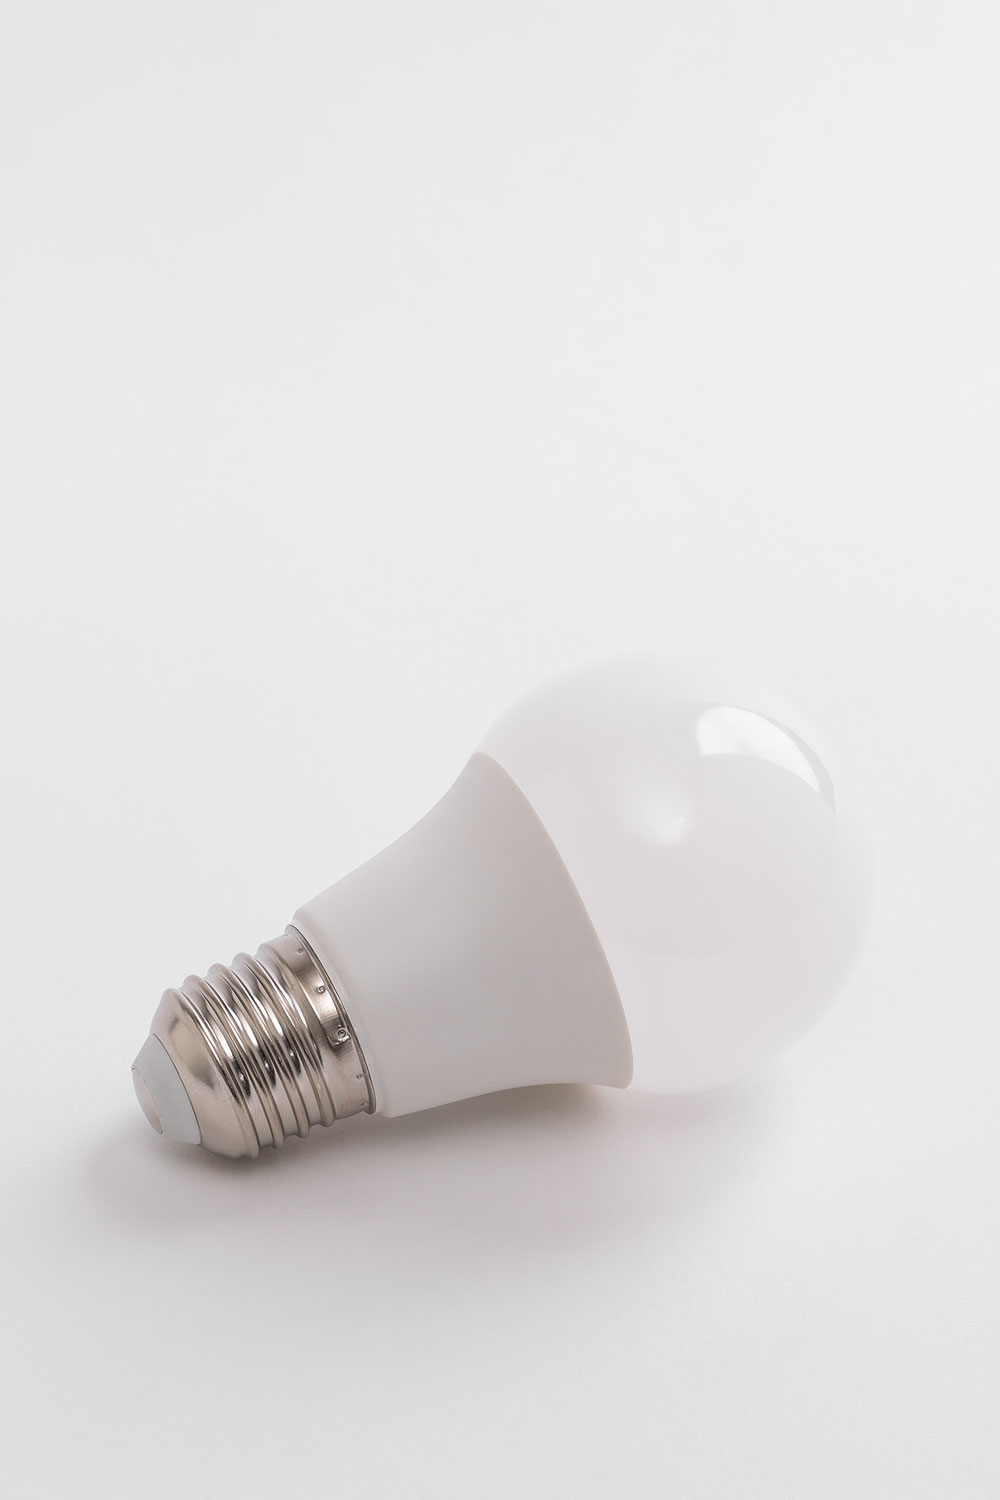 Glühlampen als effizienter LED-Ersatz